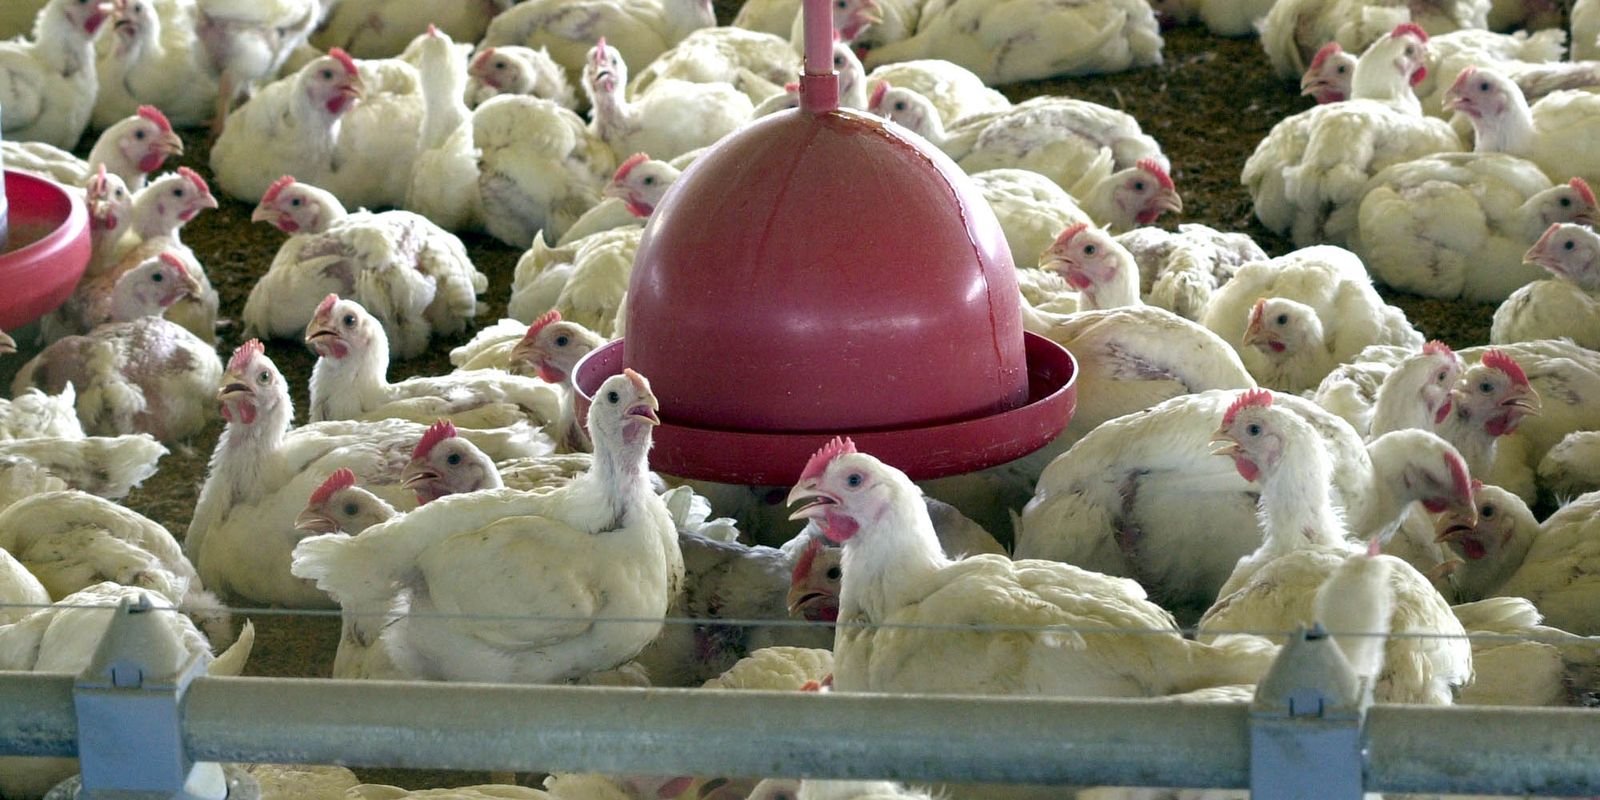 Ministério suspende feiras de aves para evitar gripe aviária no país